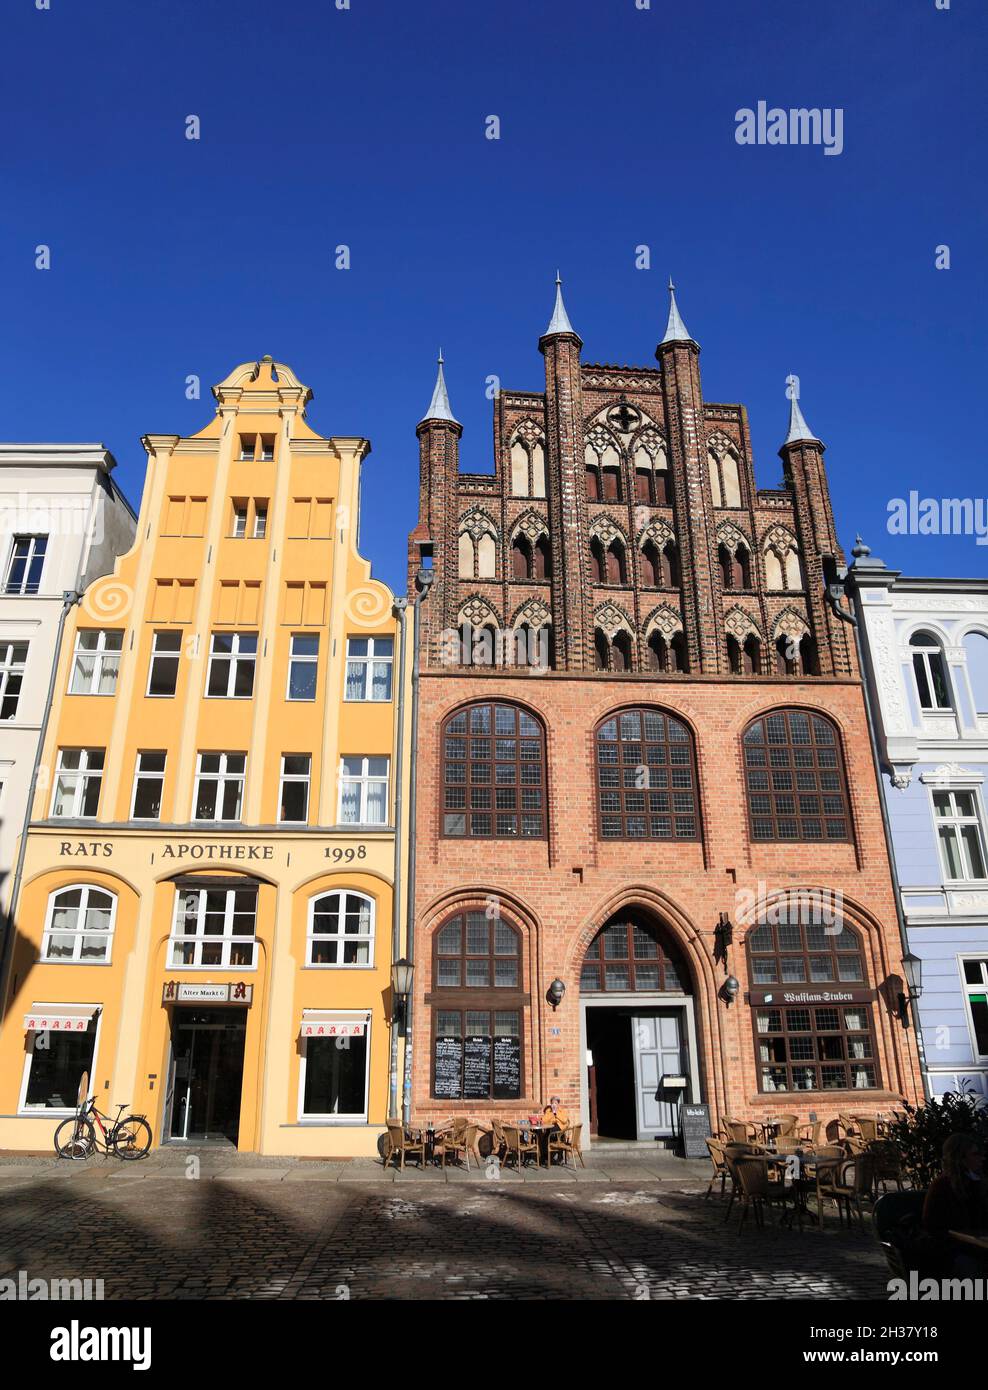 Wulflam-house (derecha) en el antiguo mercado y Ratsapotheke, la ciudad hanseática de Stralsund, Mecklemburgo Pomerania Occidental, Alemania, Europa Foto de stock